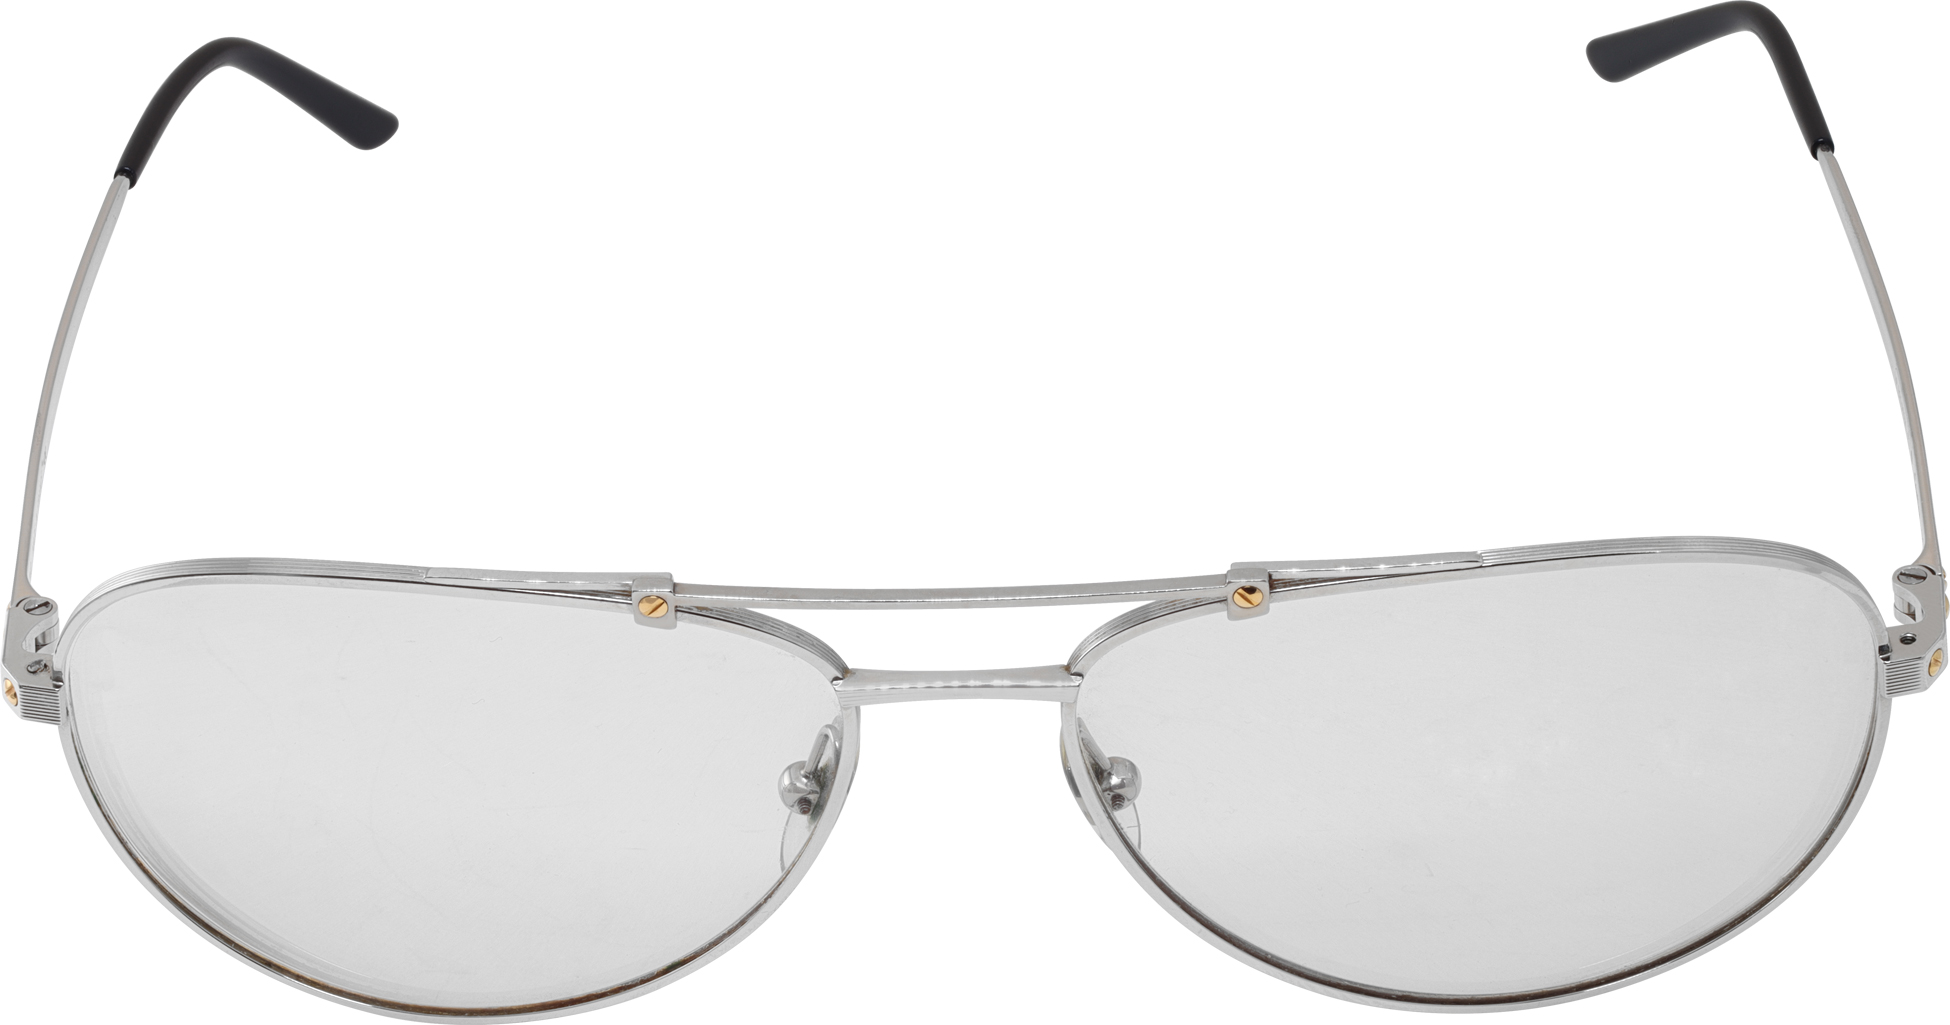 Santos de Cartier glasses with metal frame